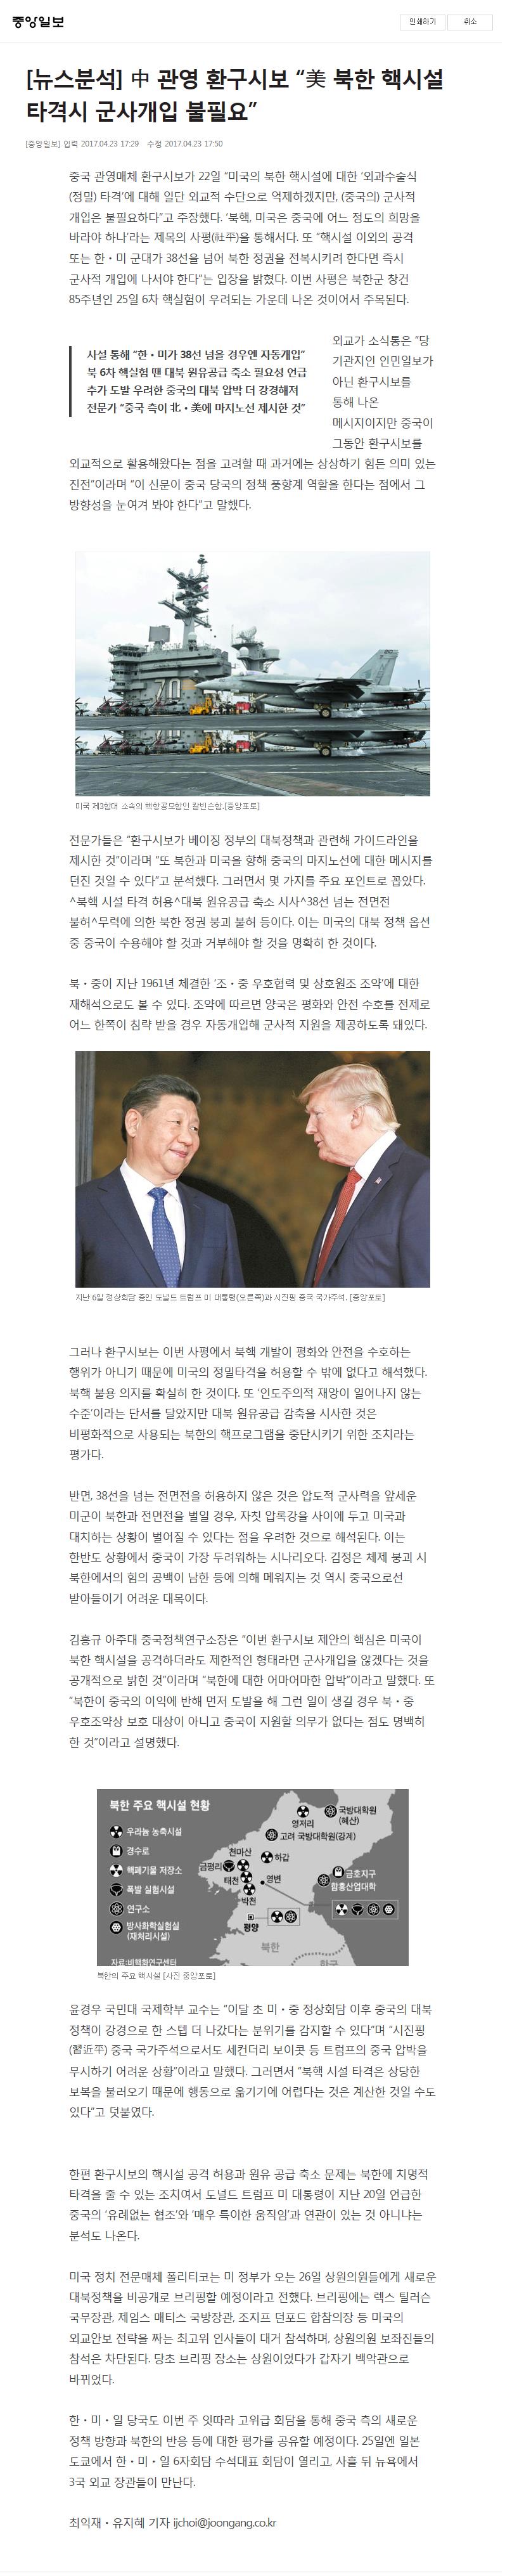 중앙일보- 뉴스분석.JPG